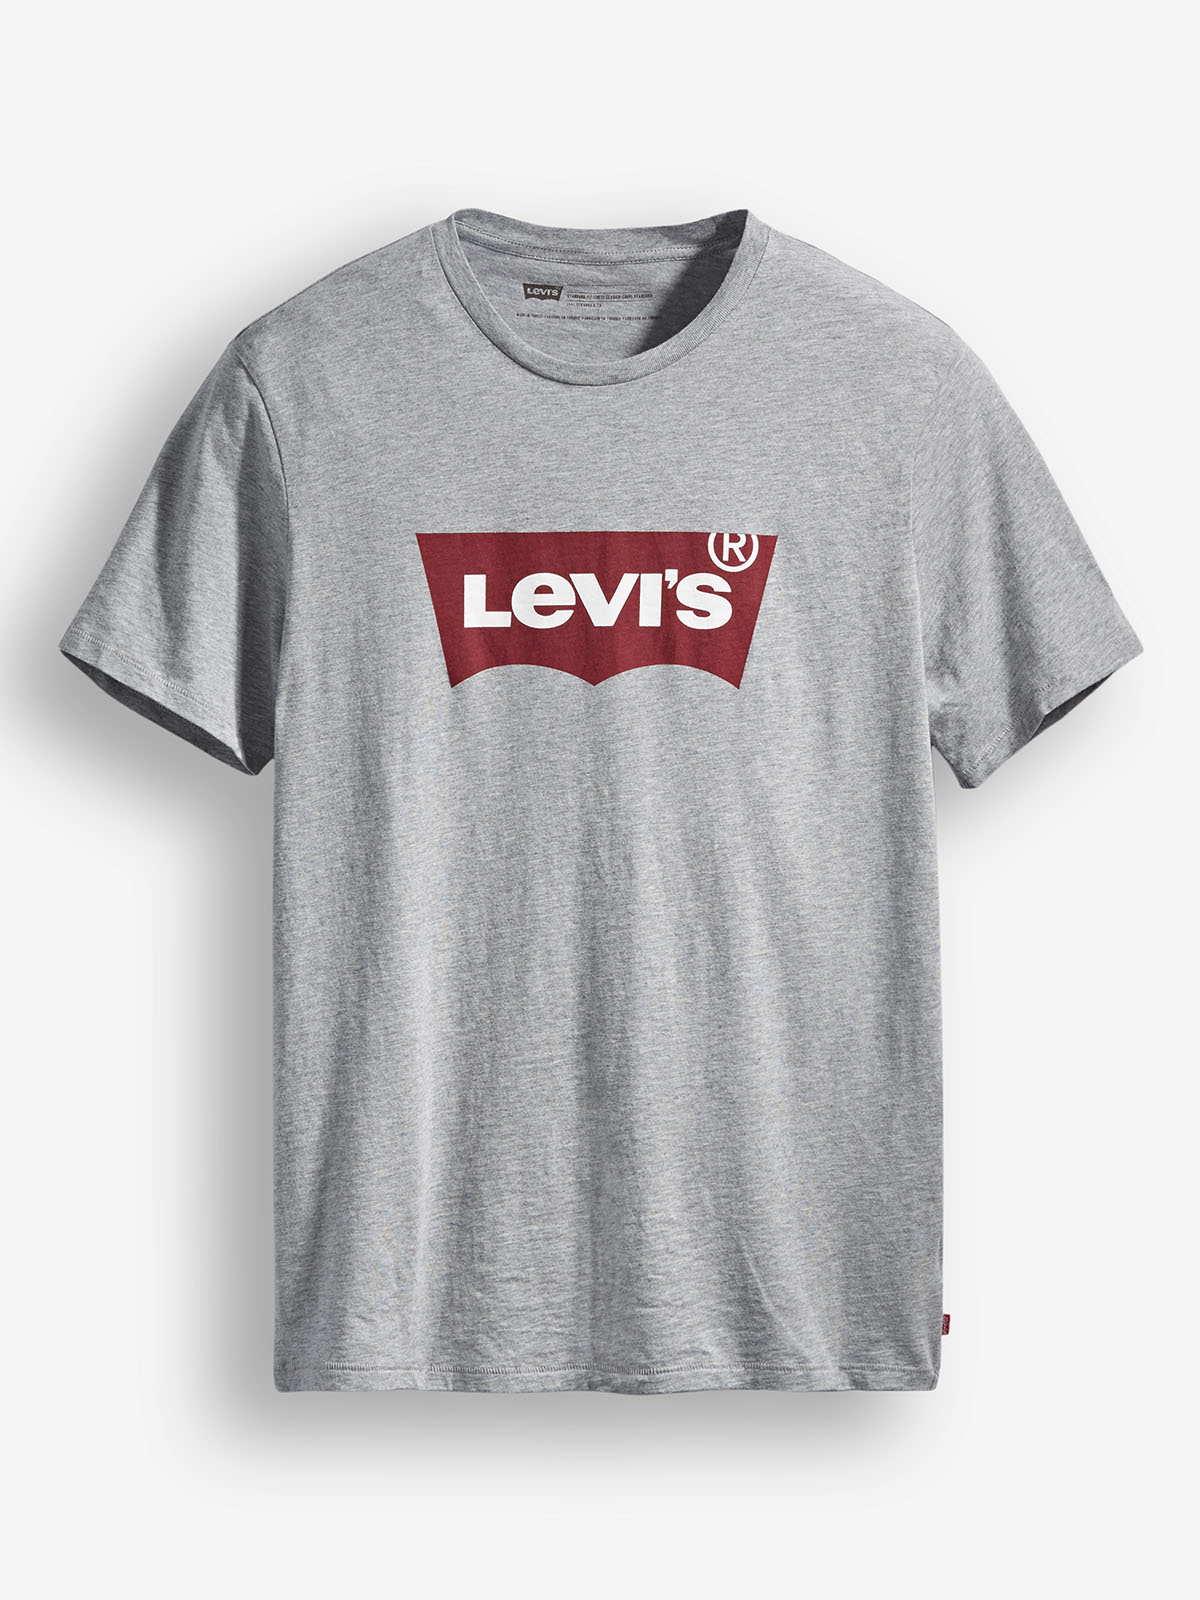 Samarreta de màniga curta d'home Levi's, model 17783-0138, de color gris i batwing logo vermell - 3 - La Casa Dels Pantalons